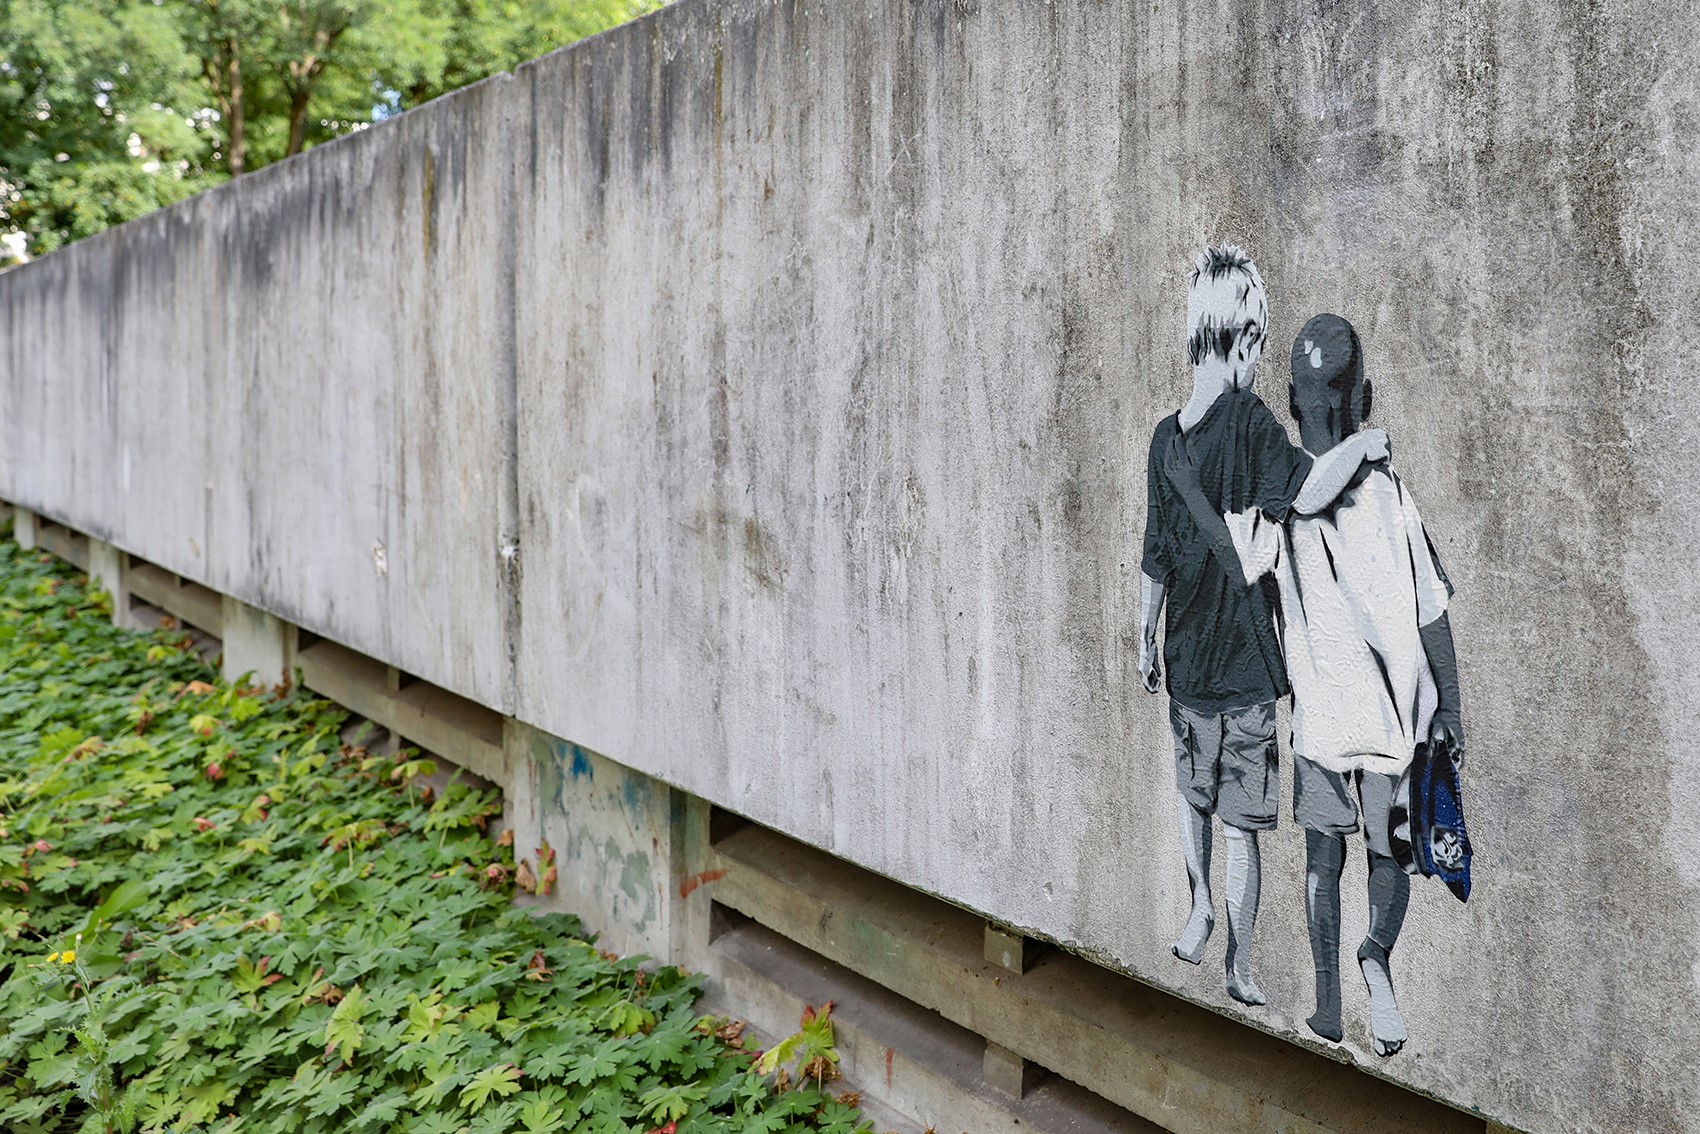 Mauer mit Graffiti von zwei Jungen, die den Arm umeinander gelegt haben.